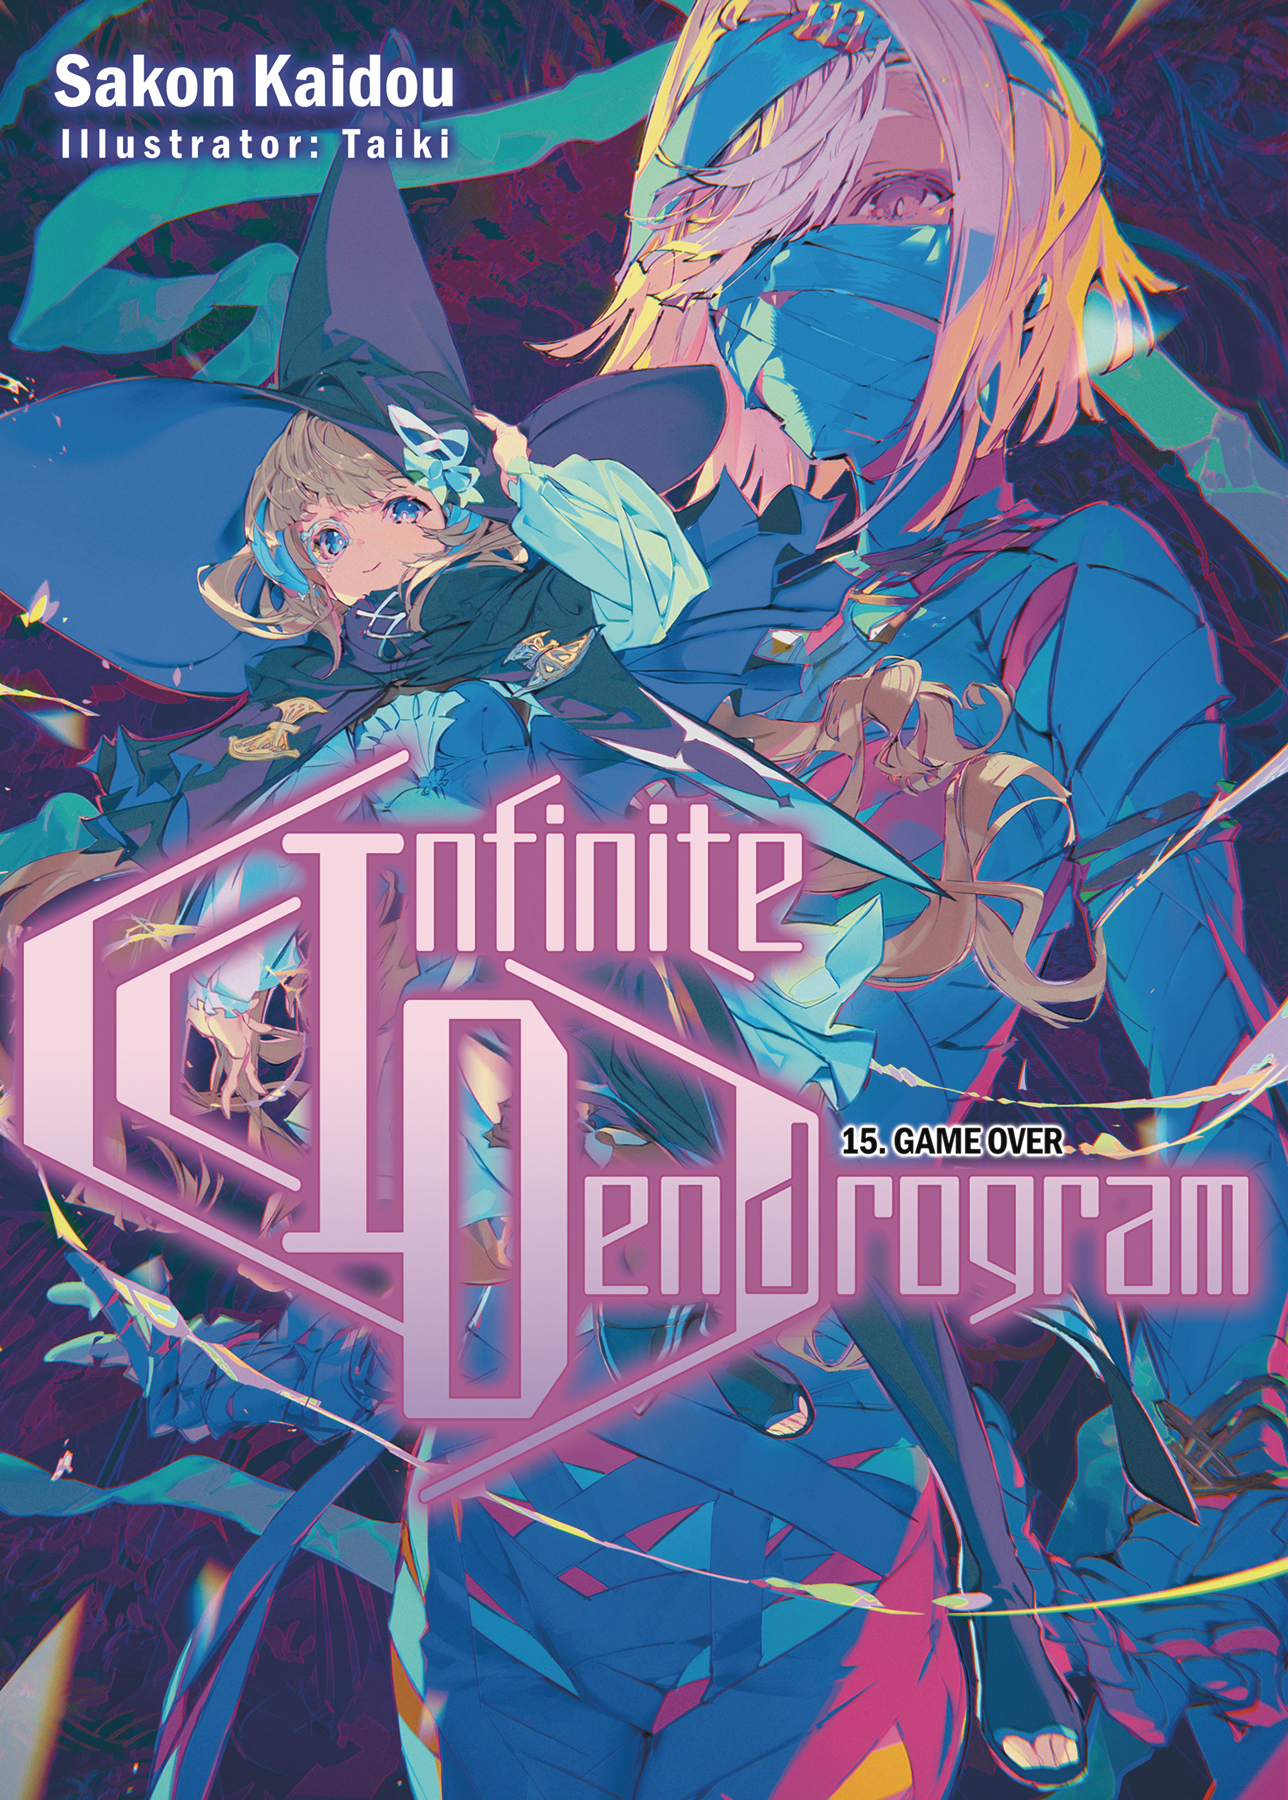 Infinite Dendrogram Light Novel Volume 15